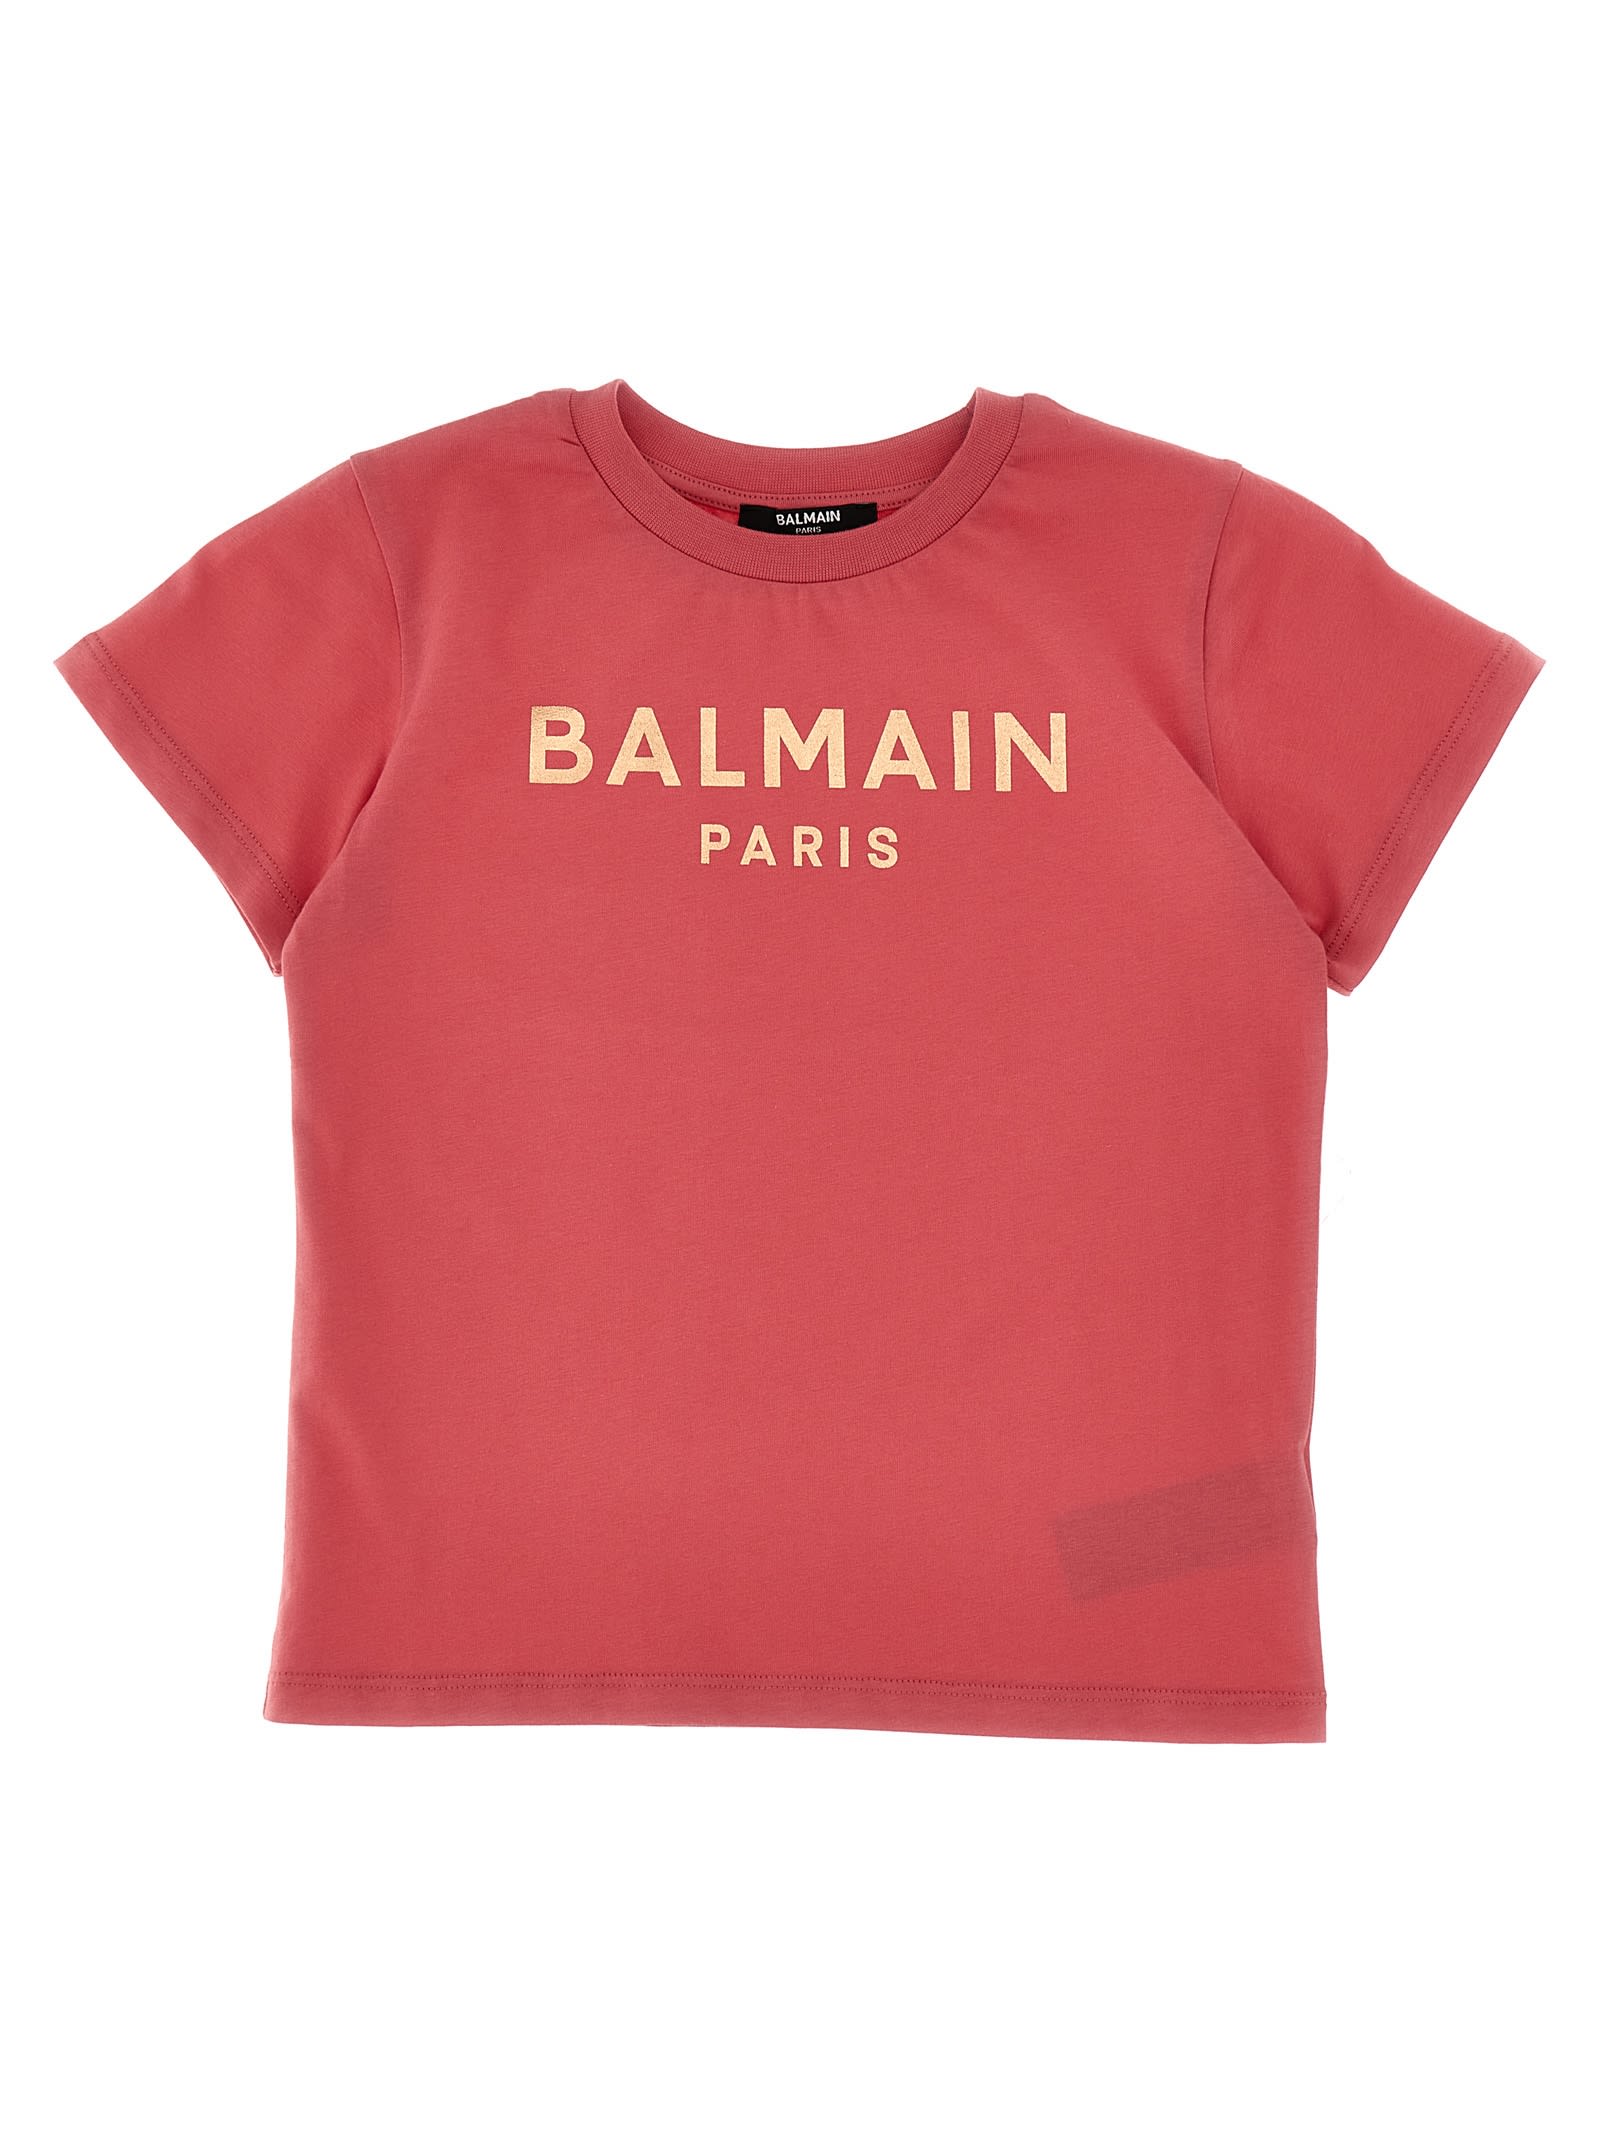 Balmain Kids' Logo Print T-shirt In Pink